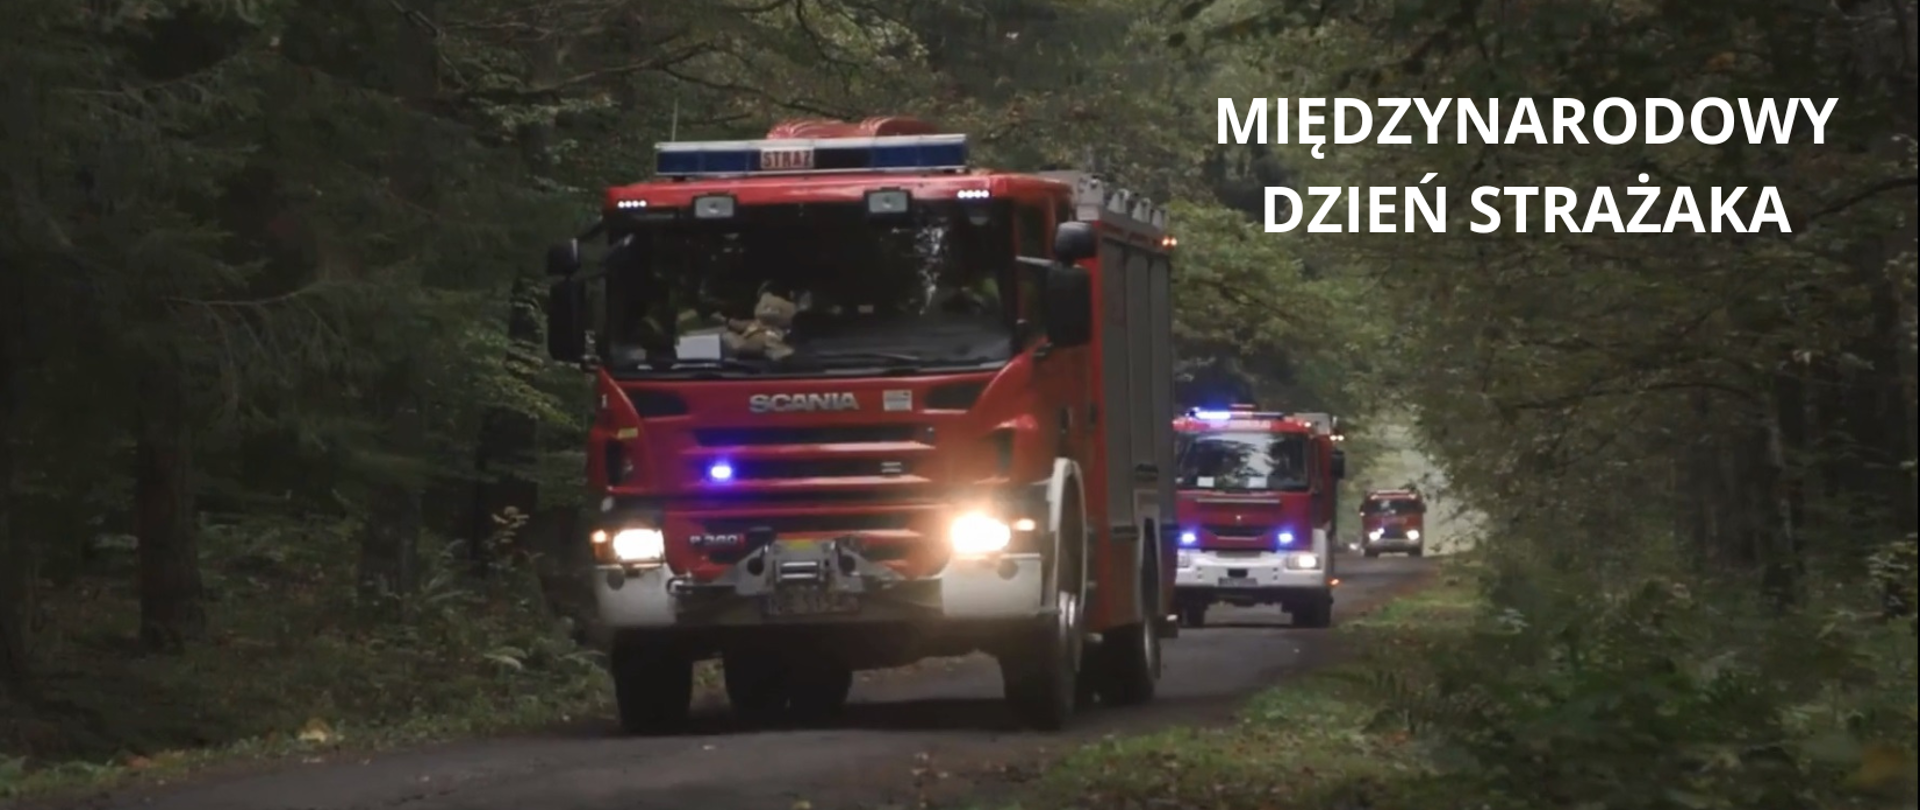 Biały napis - Międzynarodowy Dzień Strażaka na zdjęciu przedstawiającym wozy strażackie, które wyruszyły na akcję w lesie.